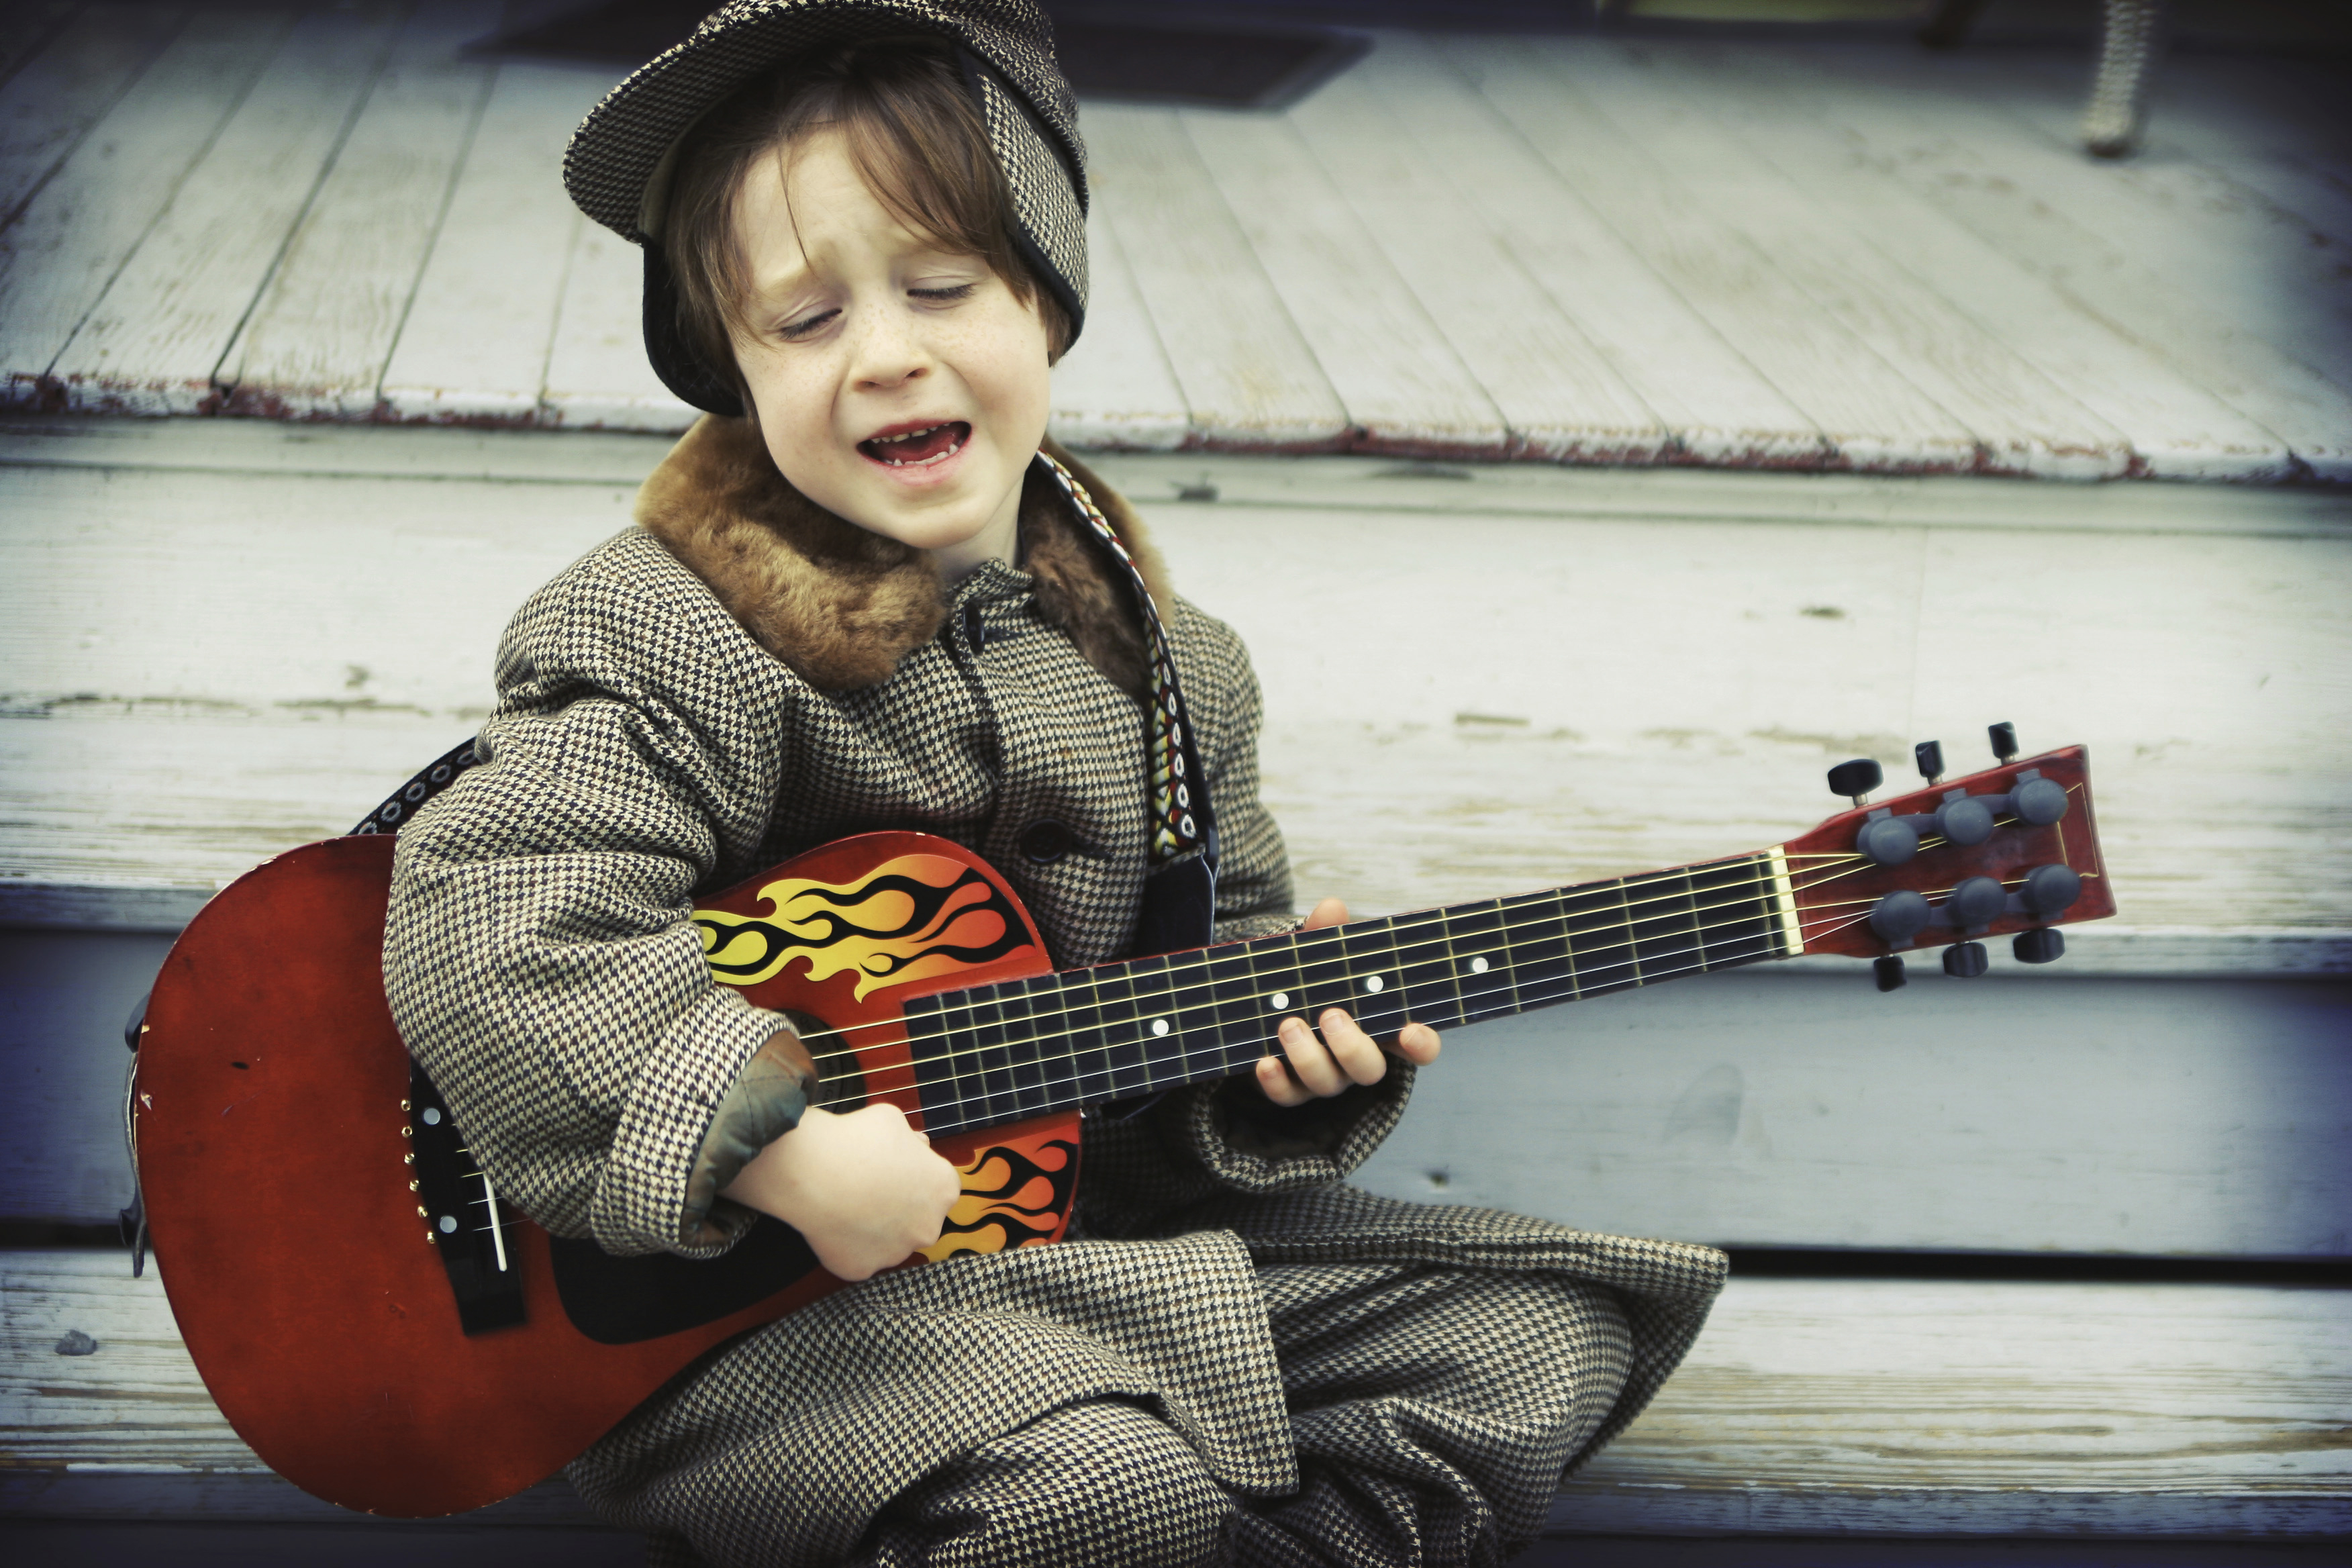 He can play guitar. Гитара для детей. Мальчик с гитарой. Дети гитаристы. Электрогитара для детей.